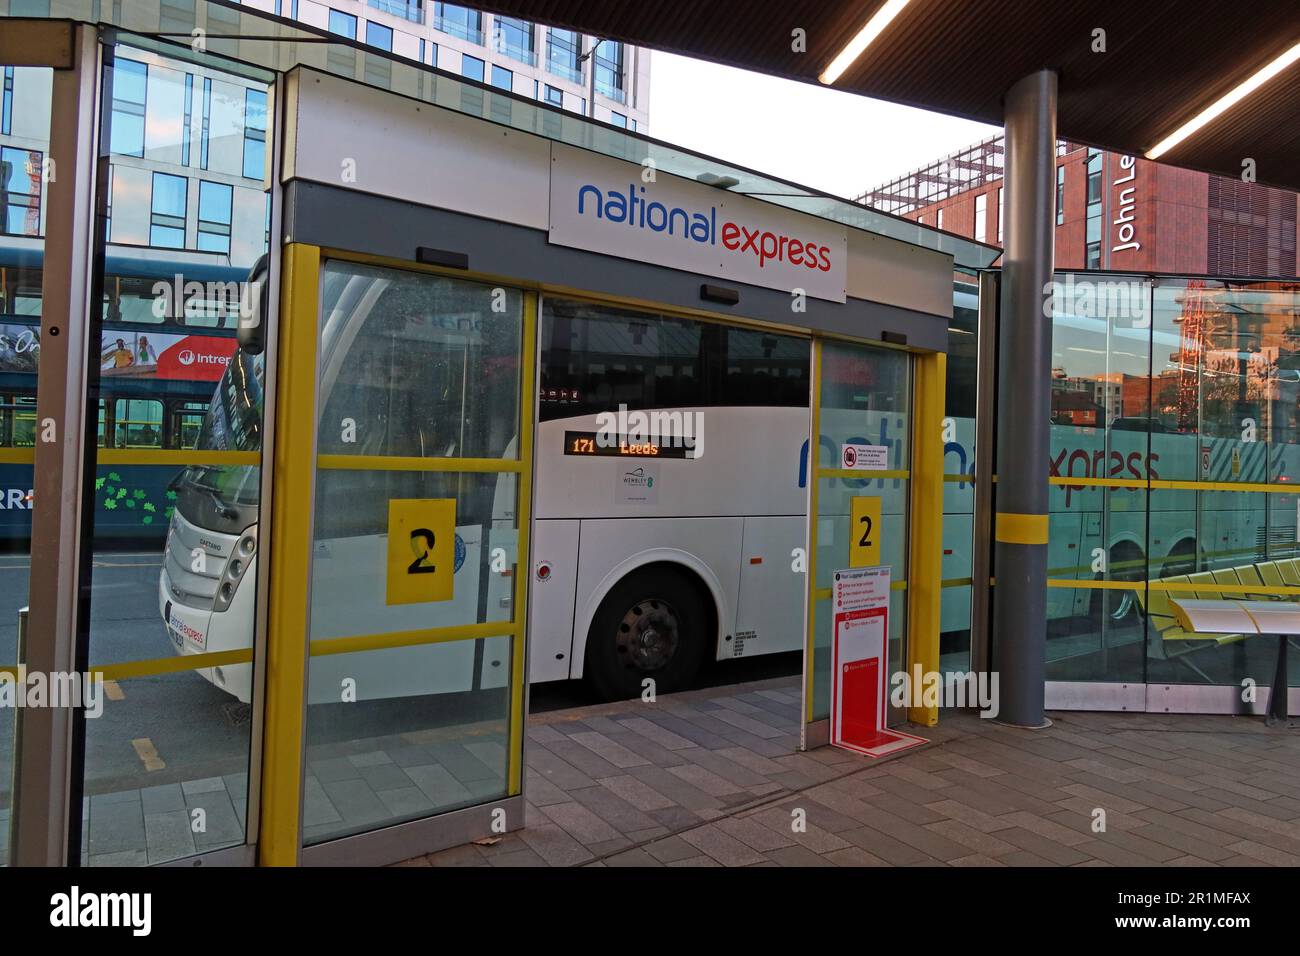 I servizi di autobus interurbani National Express si trovano allo stand 2, servizio Leeds, alla stazione degli autobus Liverpool ONE, Paradise St, Liverpool, Merseyside, Inghilterra, L1 3EU Foto Stock